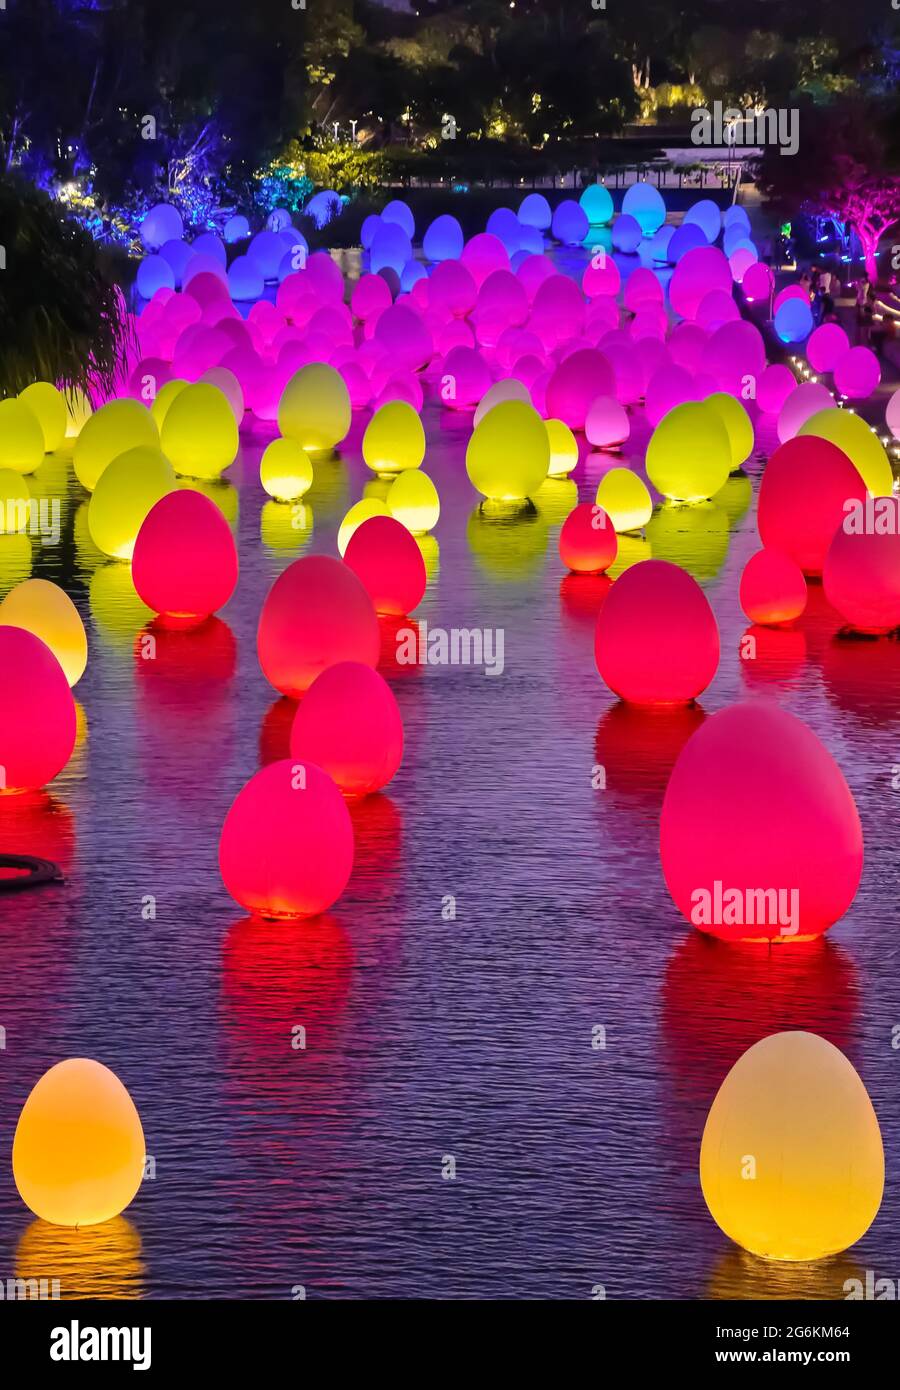 Singapour - 25 février 2020. Des œufs au néon flottent sur l'eau dans le lac Dragonfly, les jardins au bord de la baie. Événement temporaire future Together by Japanese art TeamLab. Banque D'Images